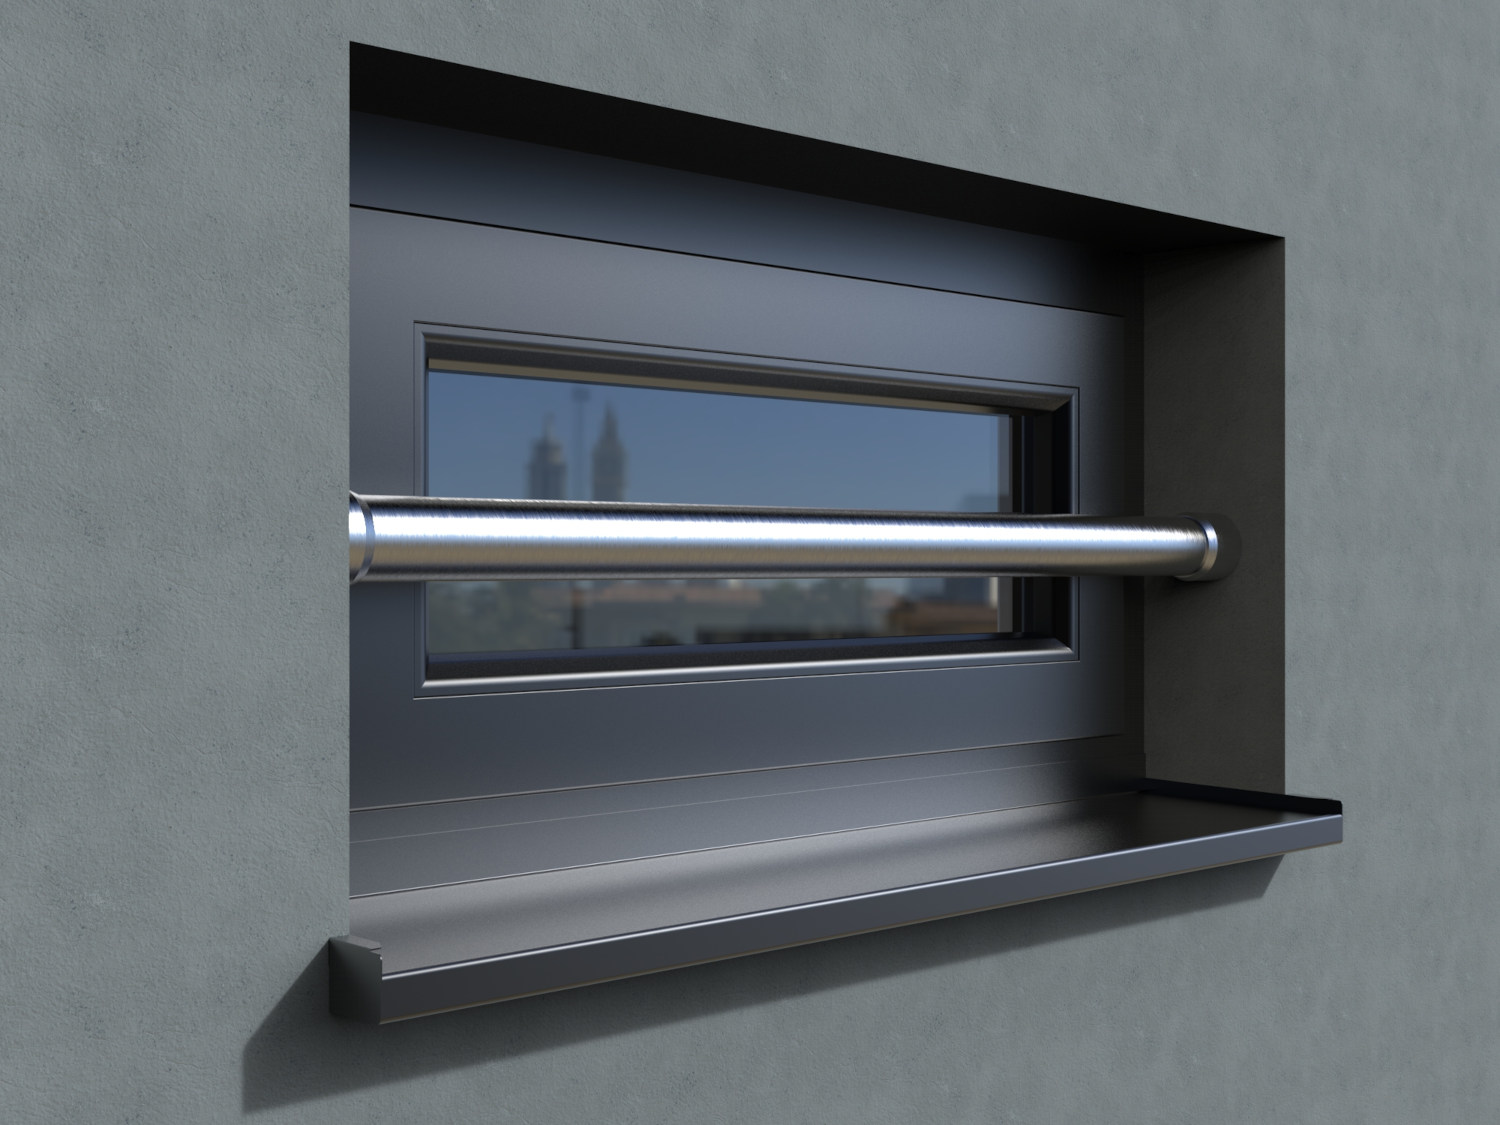 Einbruchschutz für Fenster Security Bar 3, Fenstergitter, Fenstersicherung aus Edelstahl